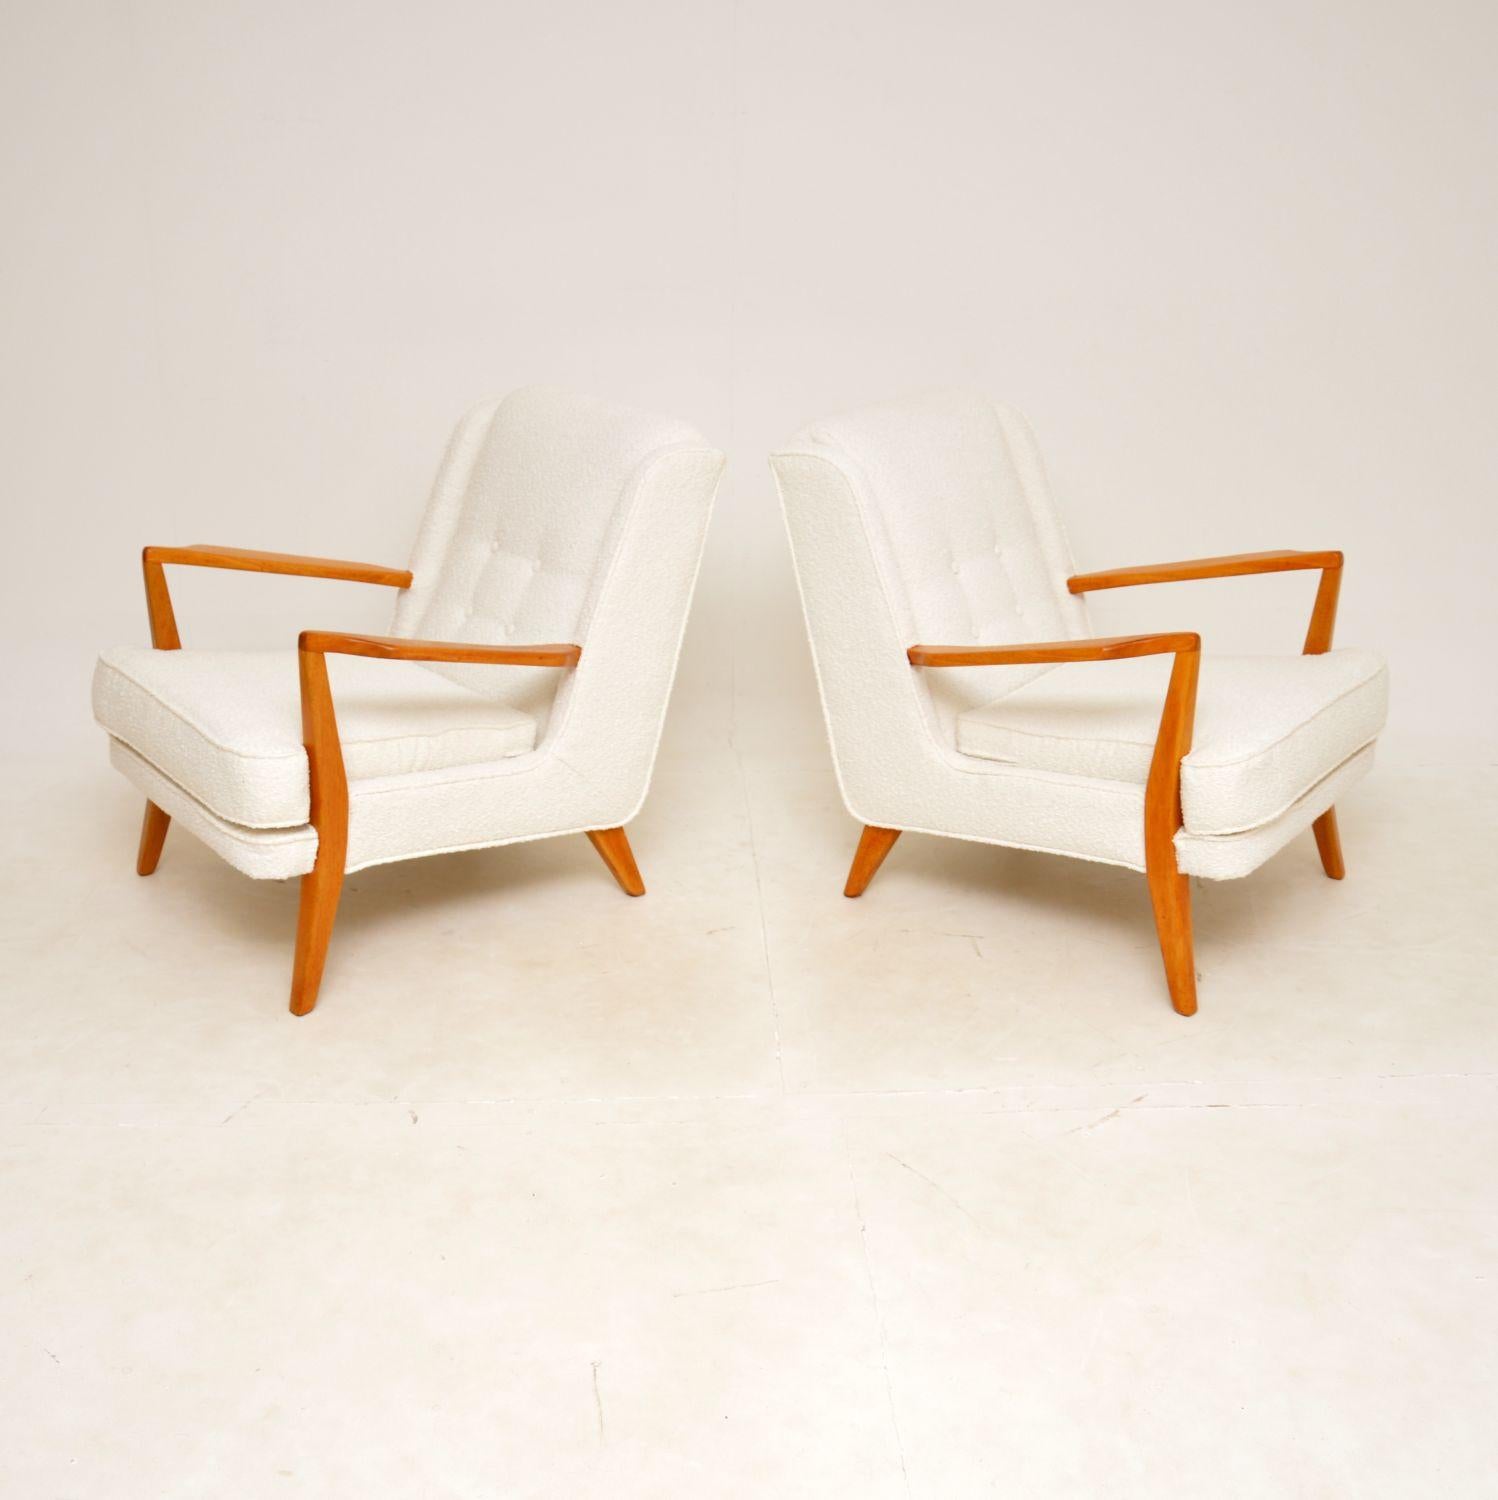 Ein hervorragendes und äußerst seltenes Paar Vintage-Sessel von G-Plan. Sie wurden in England hergestellt und stammen aus den 1950-60er Jahren.

Die Qualität ist hervorragend, sie sind sehr stilvoll und bequem. Die Rahmen sind aus hellem Massivholz,